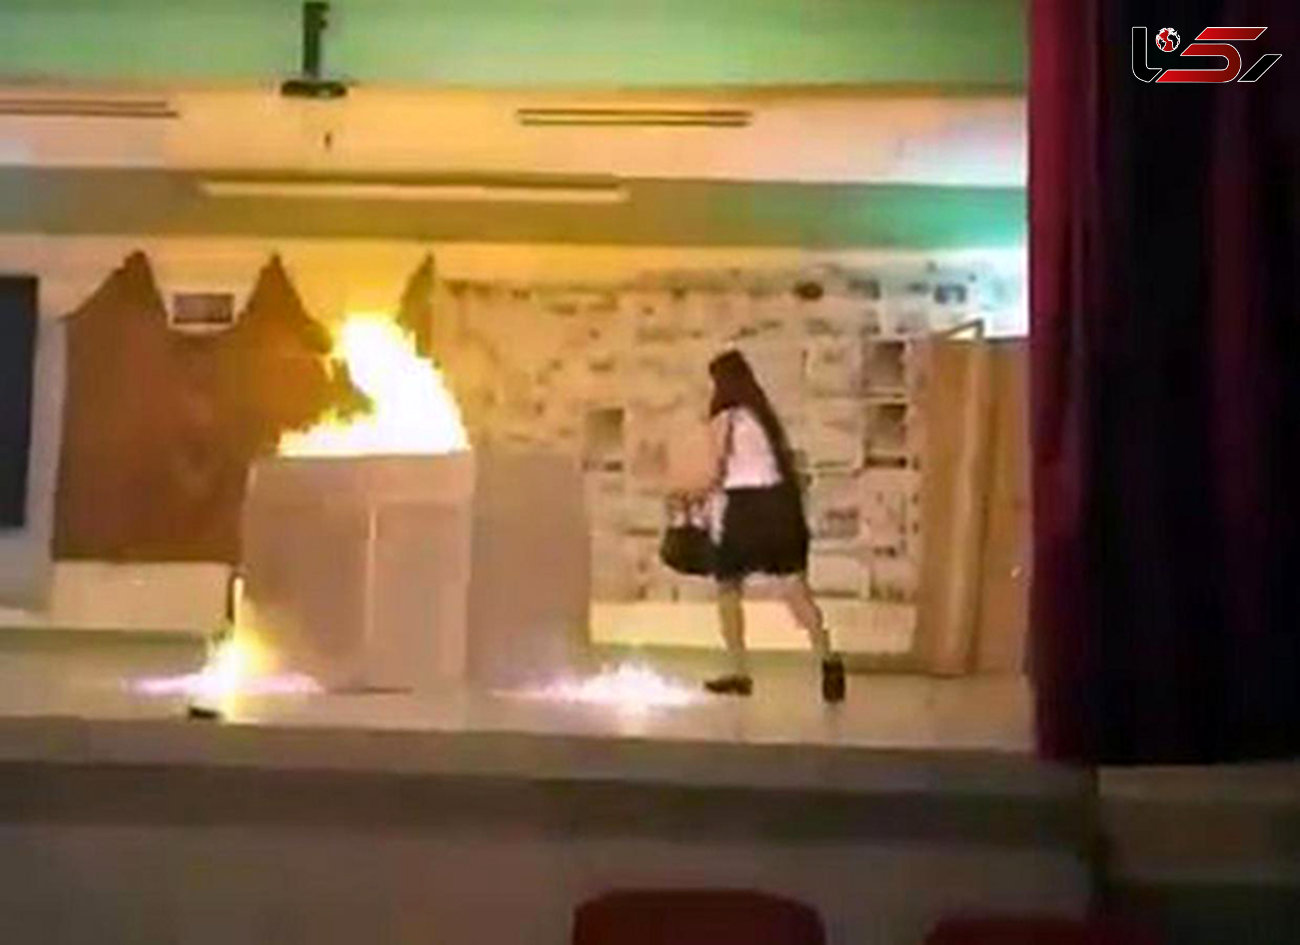 2 دانش آموز در تمرین تئاتر در آتش سوختند/ معلم اخراج شد+عکس لحظه حادثه